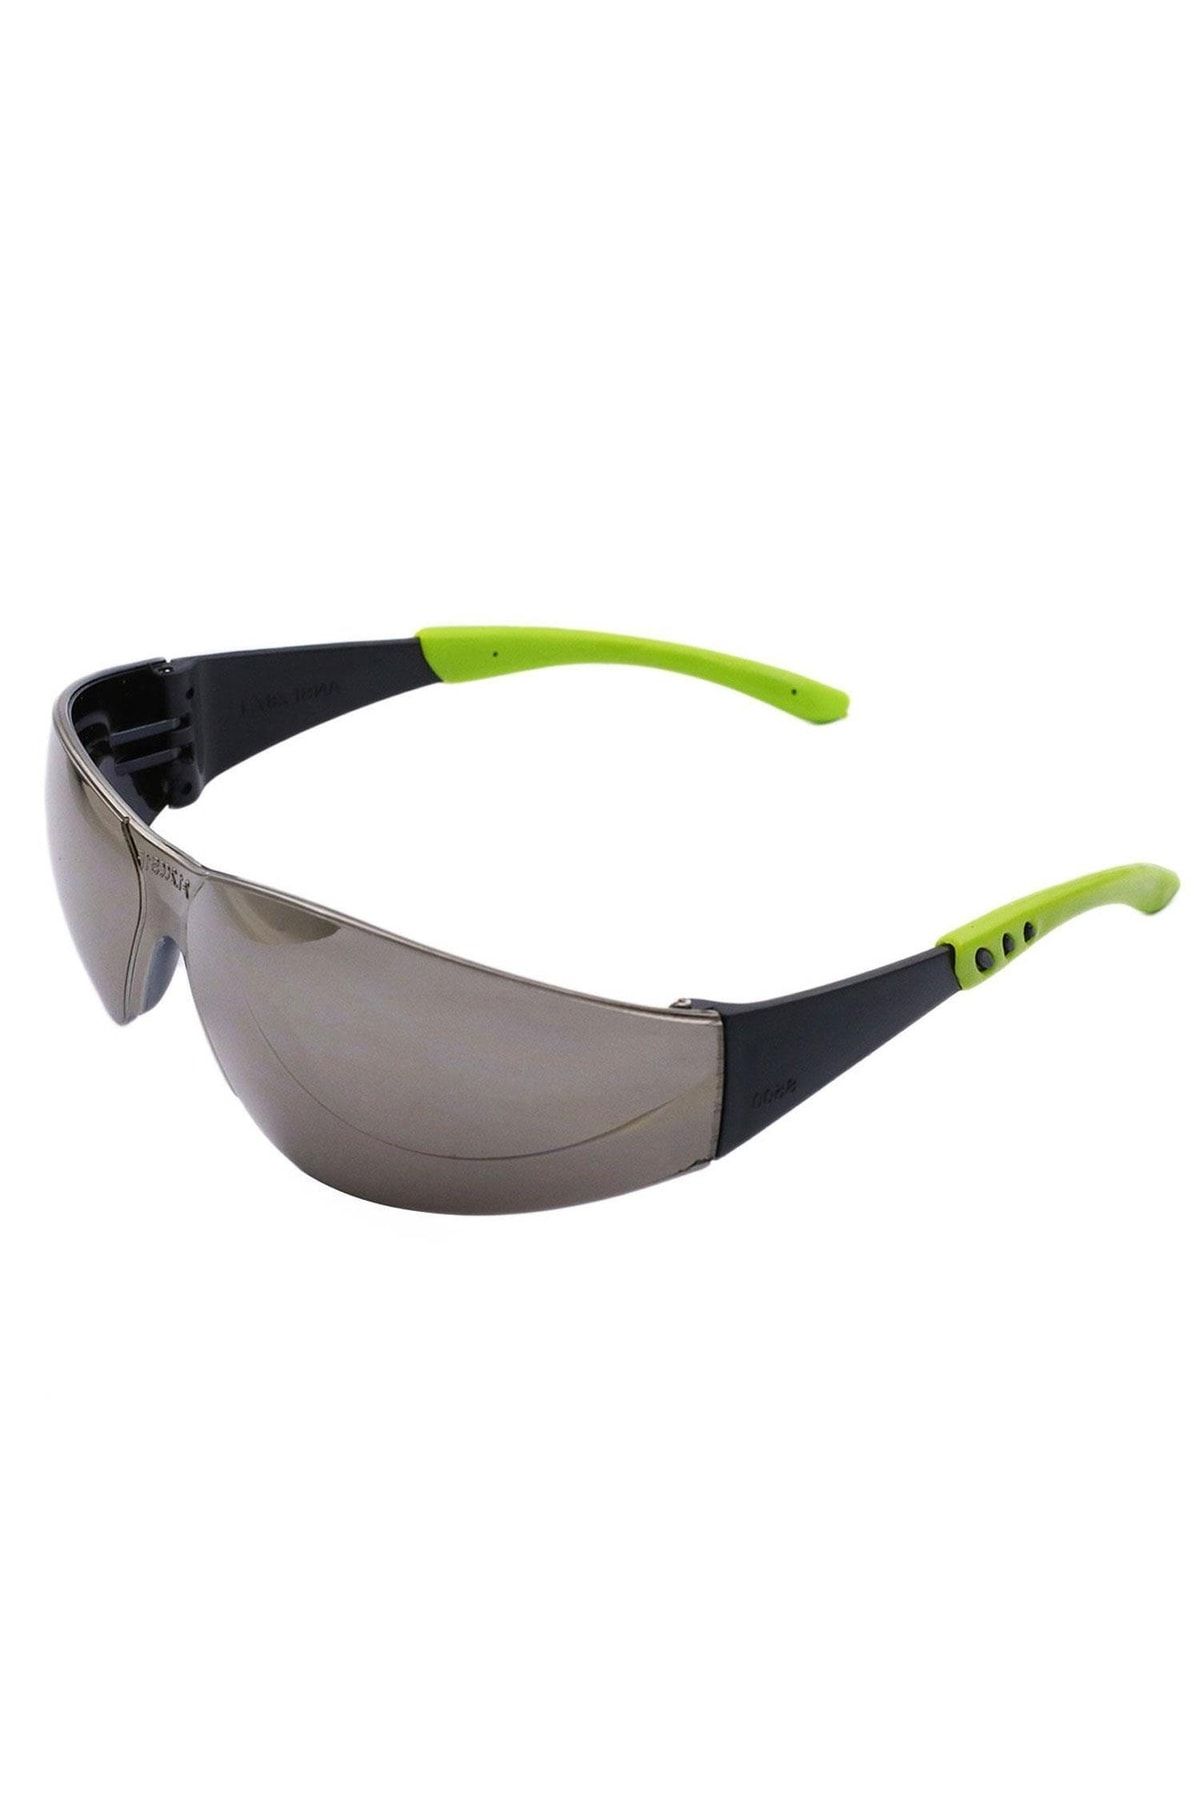 NZB Bisiklet Gözlüğü Uv Korumalı Silikonlu Antifog Bisikletçi Gözlük Aynalı Gümüş